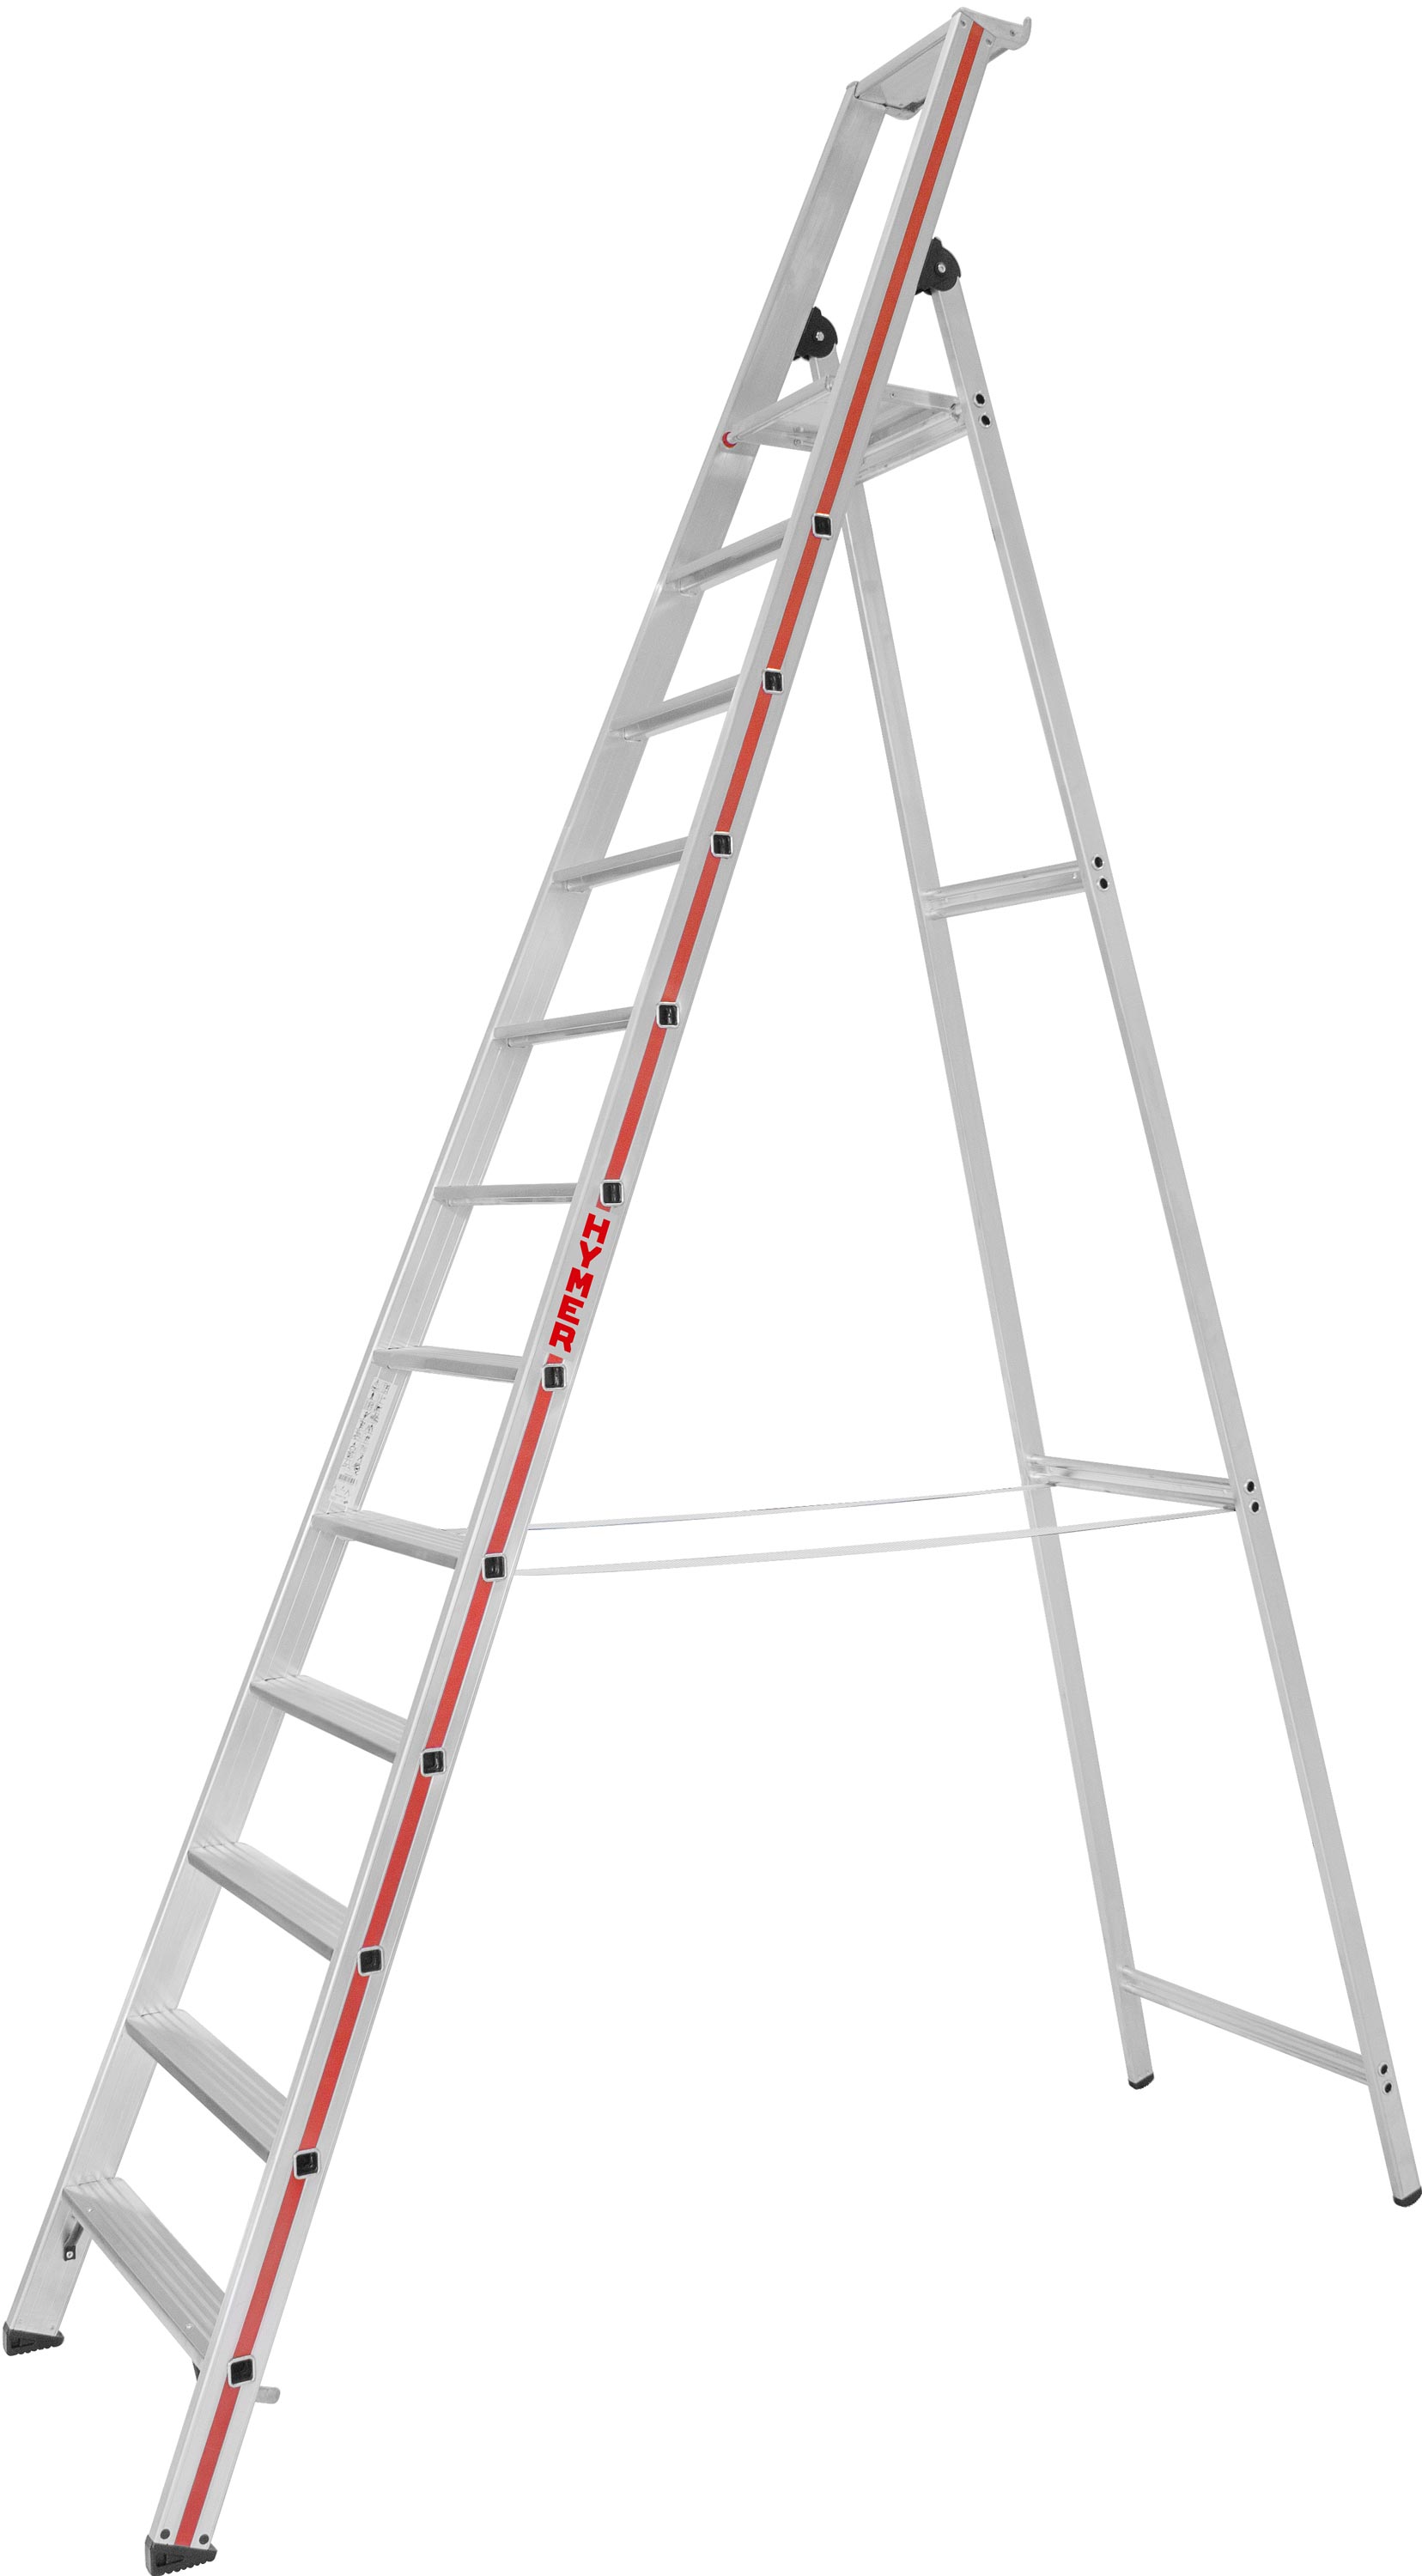 Hymer Stehleiter SC 80 Alu 12 Stufen Leiter einseitig begehbar - Industrieprogramm (HY-802612) Bild-01